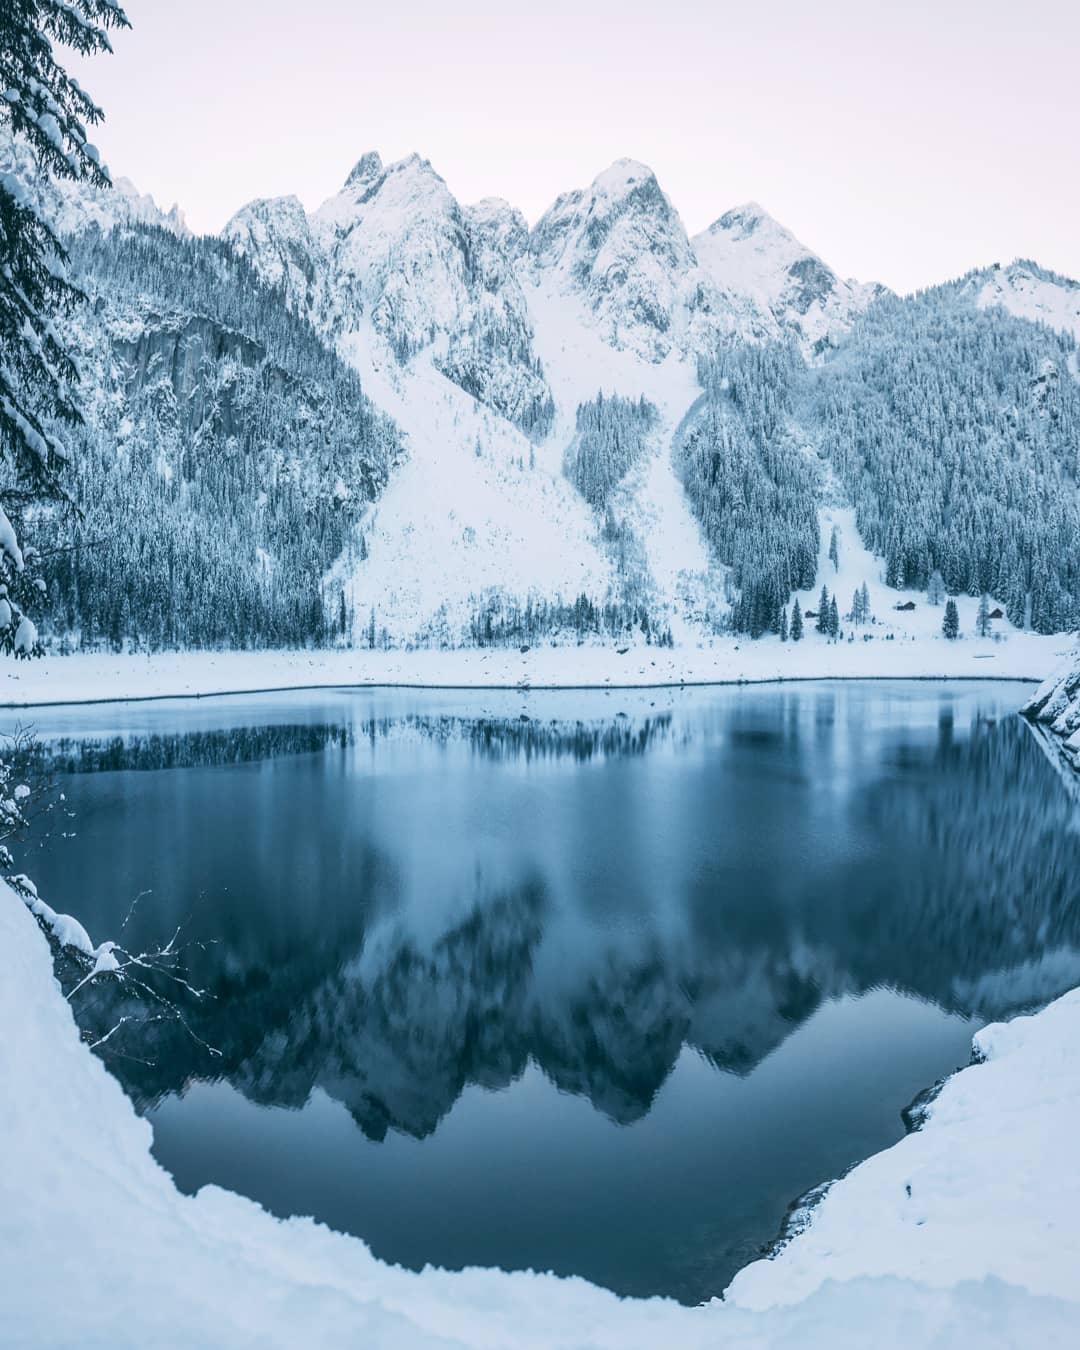 Красота зимней Австрии на снимках Себастьяна Шейхла